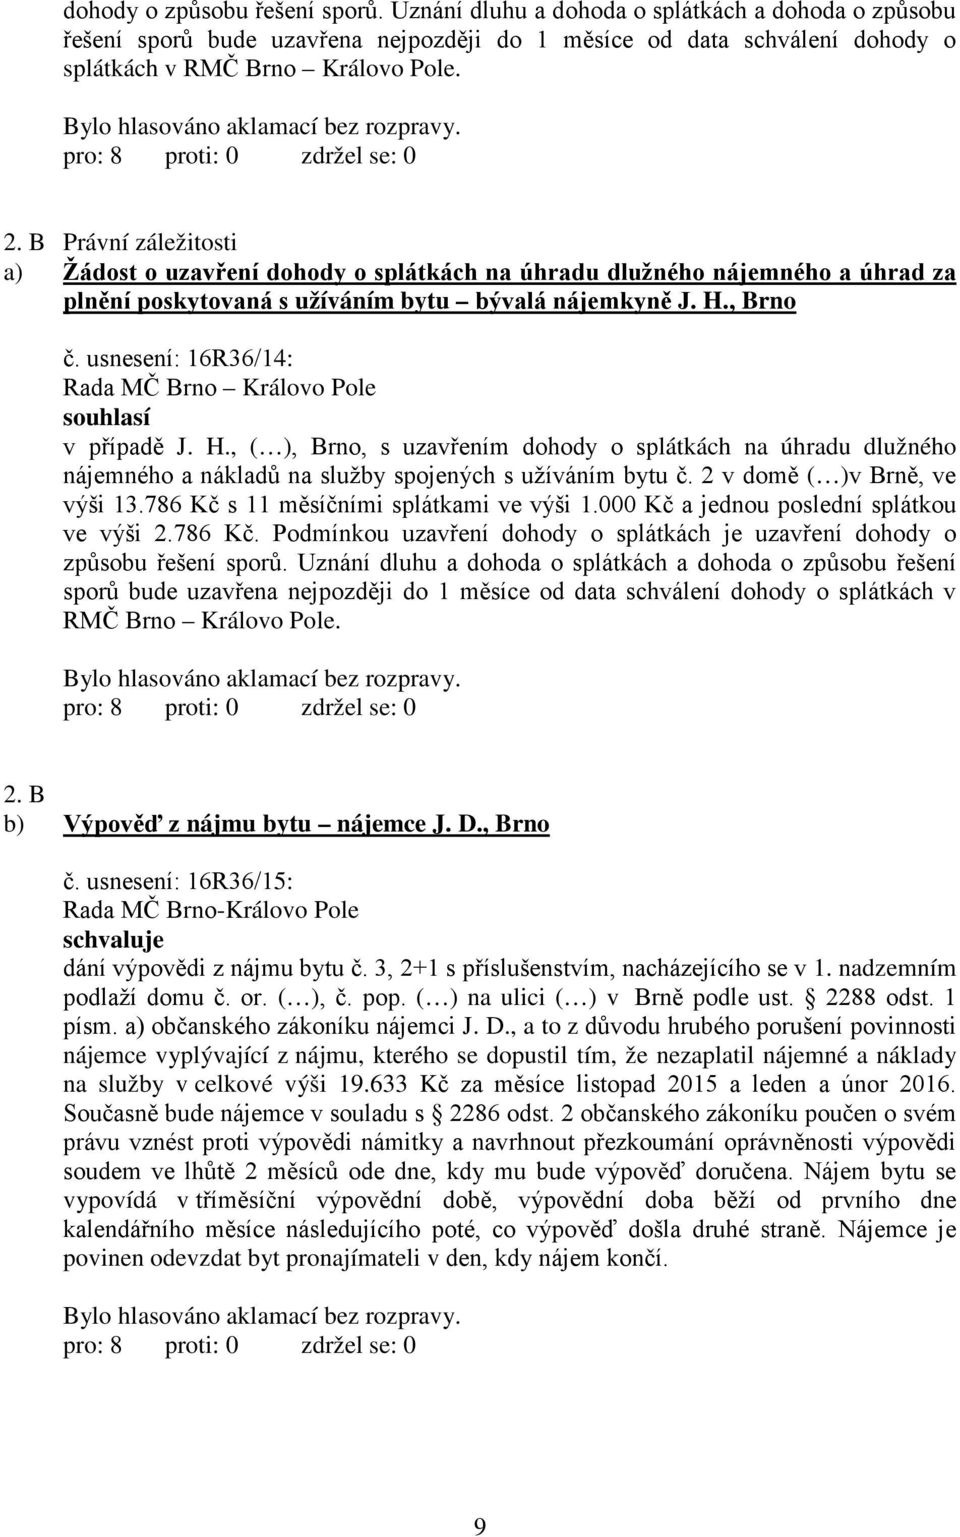 usnesení: 16R36/14: souhlasí v případě J. H., ( ), Brno, s uzavřením dohody o splátkách na úhradu dlužného nájemného a nákladů na služby spojených s užíváním bytu č. 2 v domě ( )v Brně, ve výši 13.